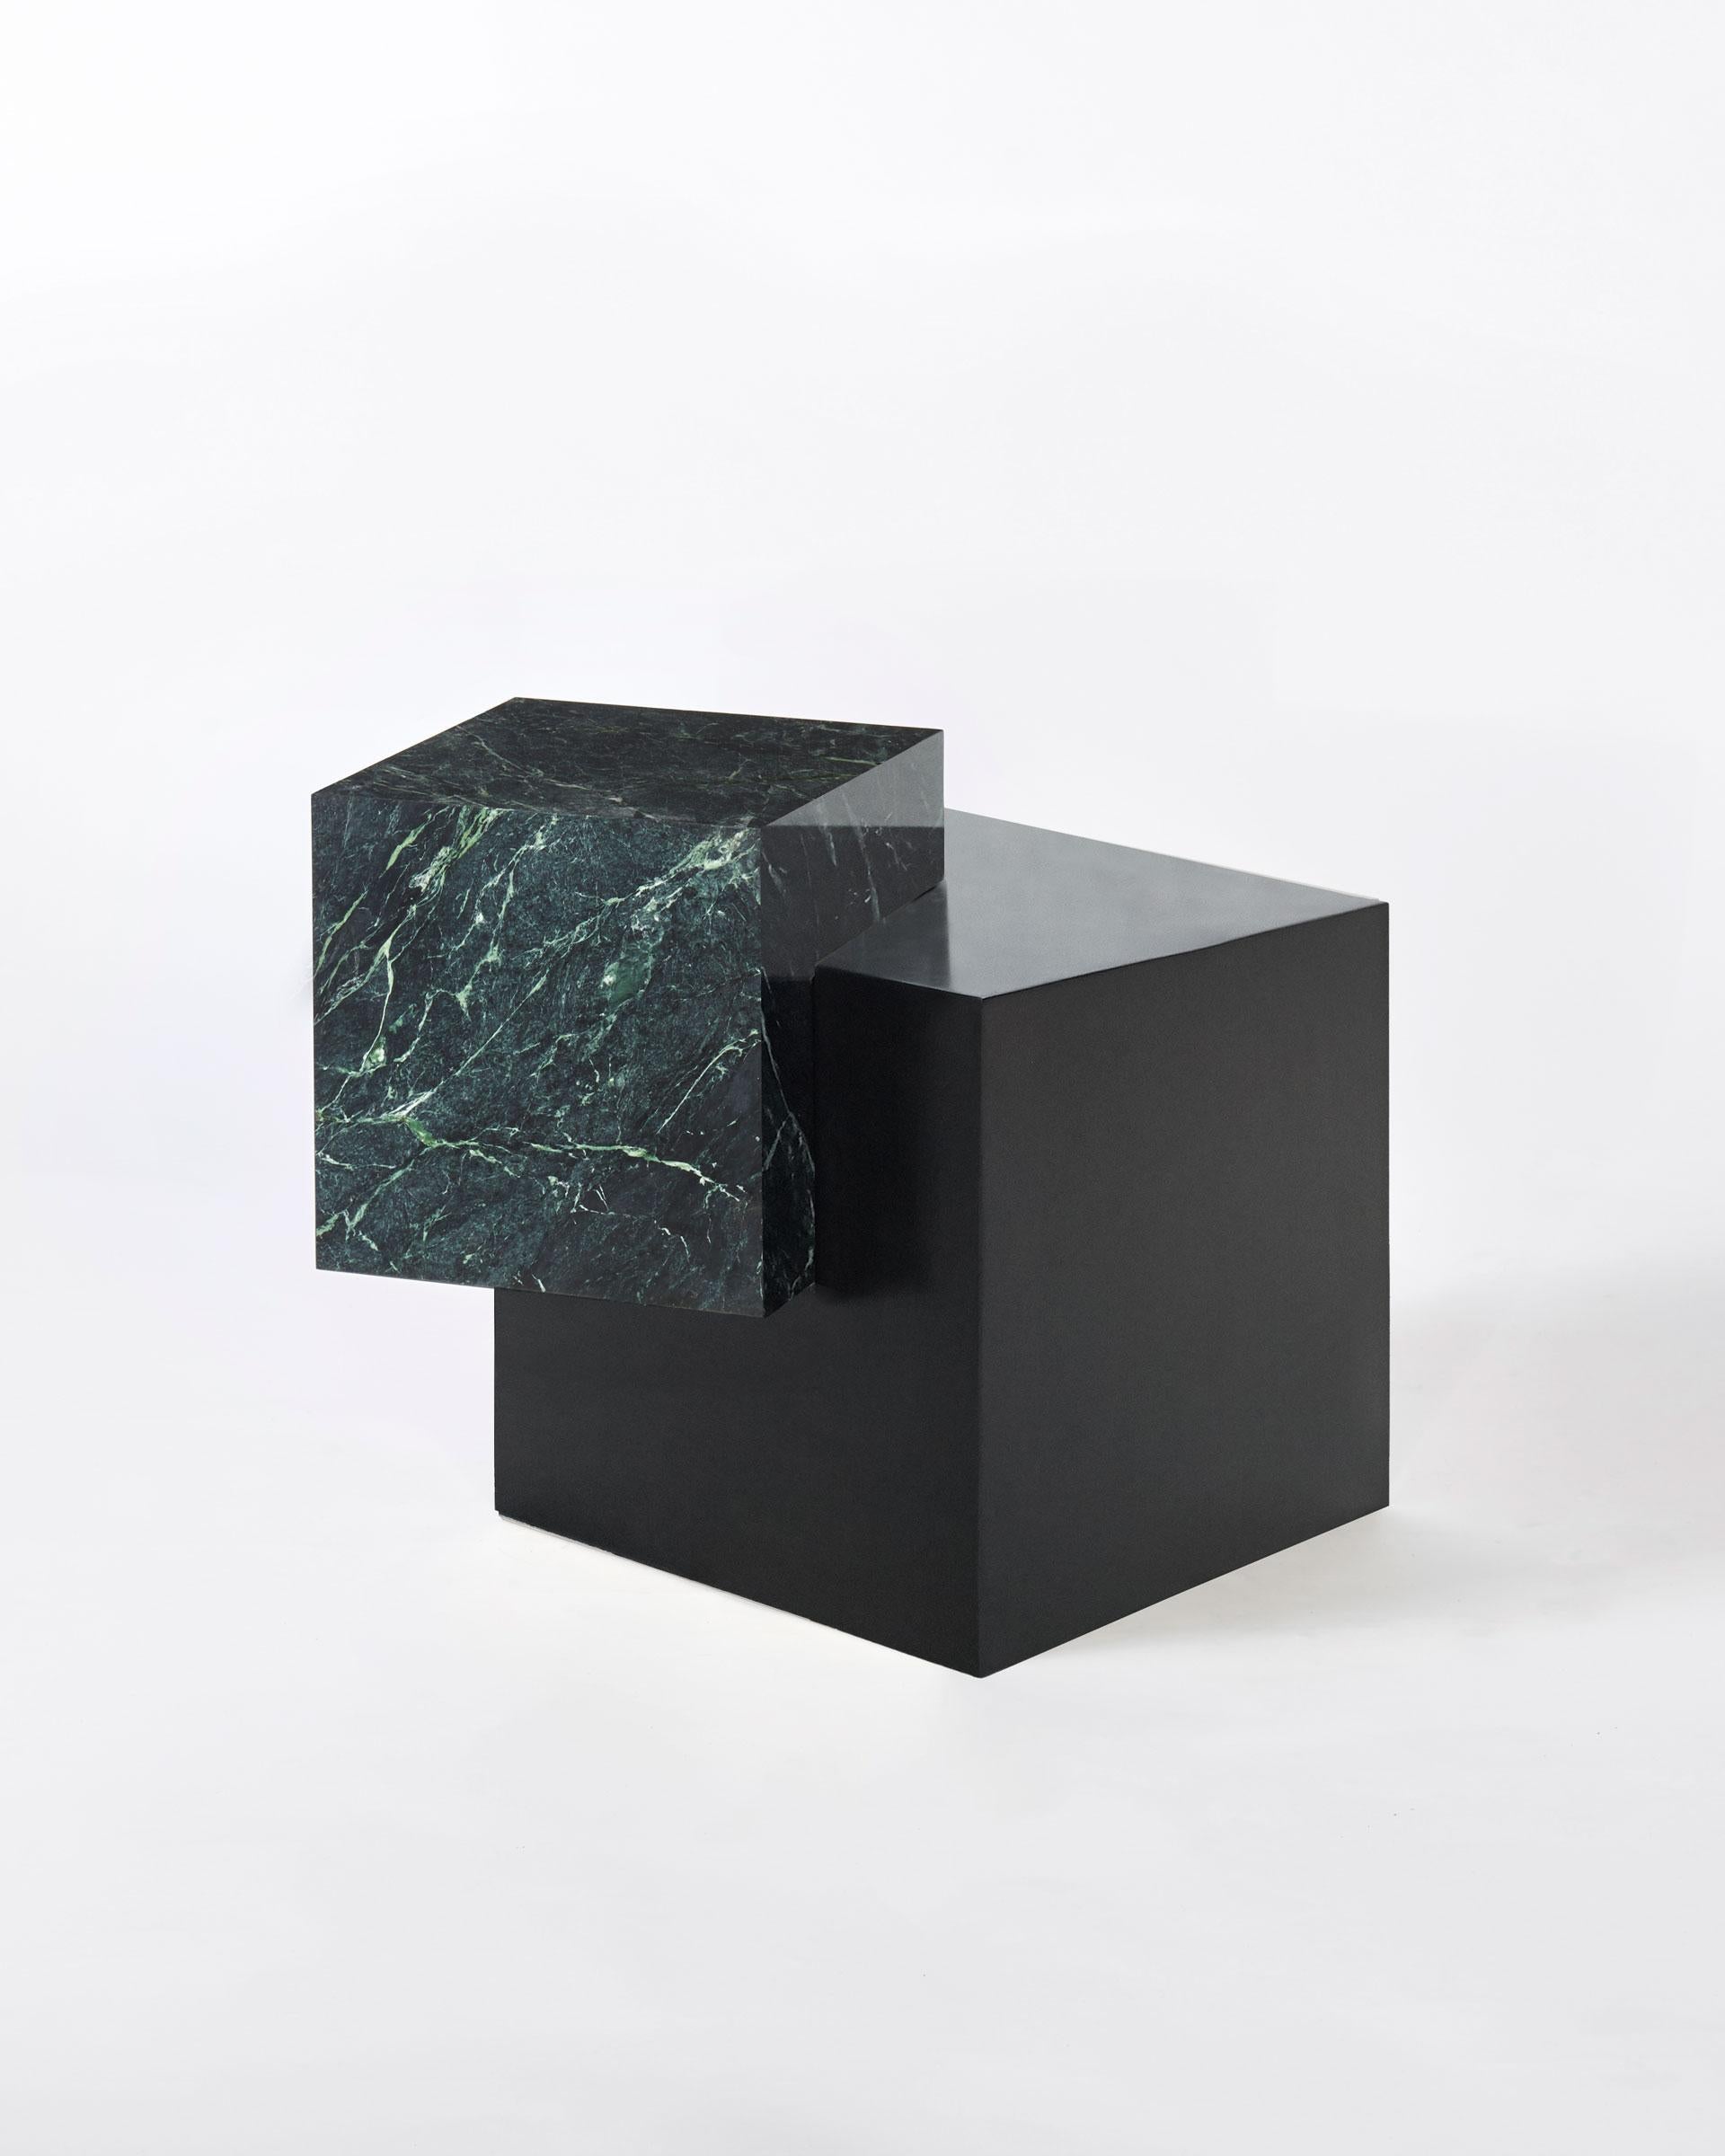 La coexistence de travers est une exploration de l'équilibre, de la matière et de l'harmonie. Les matériaux se composent d'une base cubique en acier noir et d'un plateau cubique en marbre.

La table présente un cube de marbre équilibré à un angle